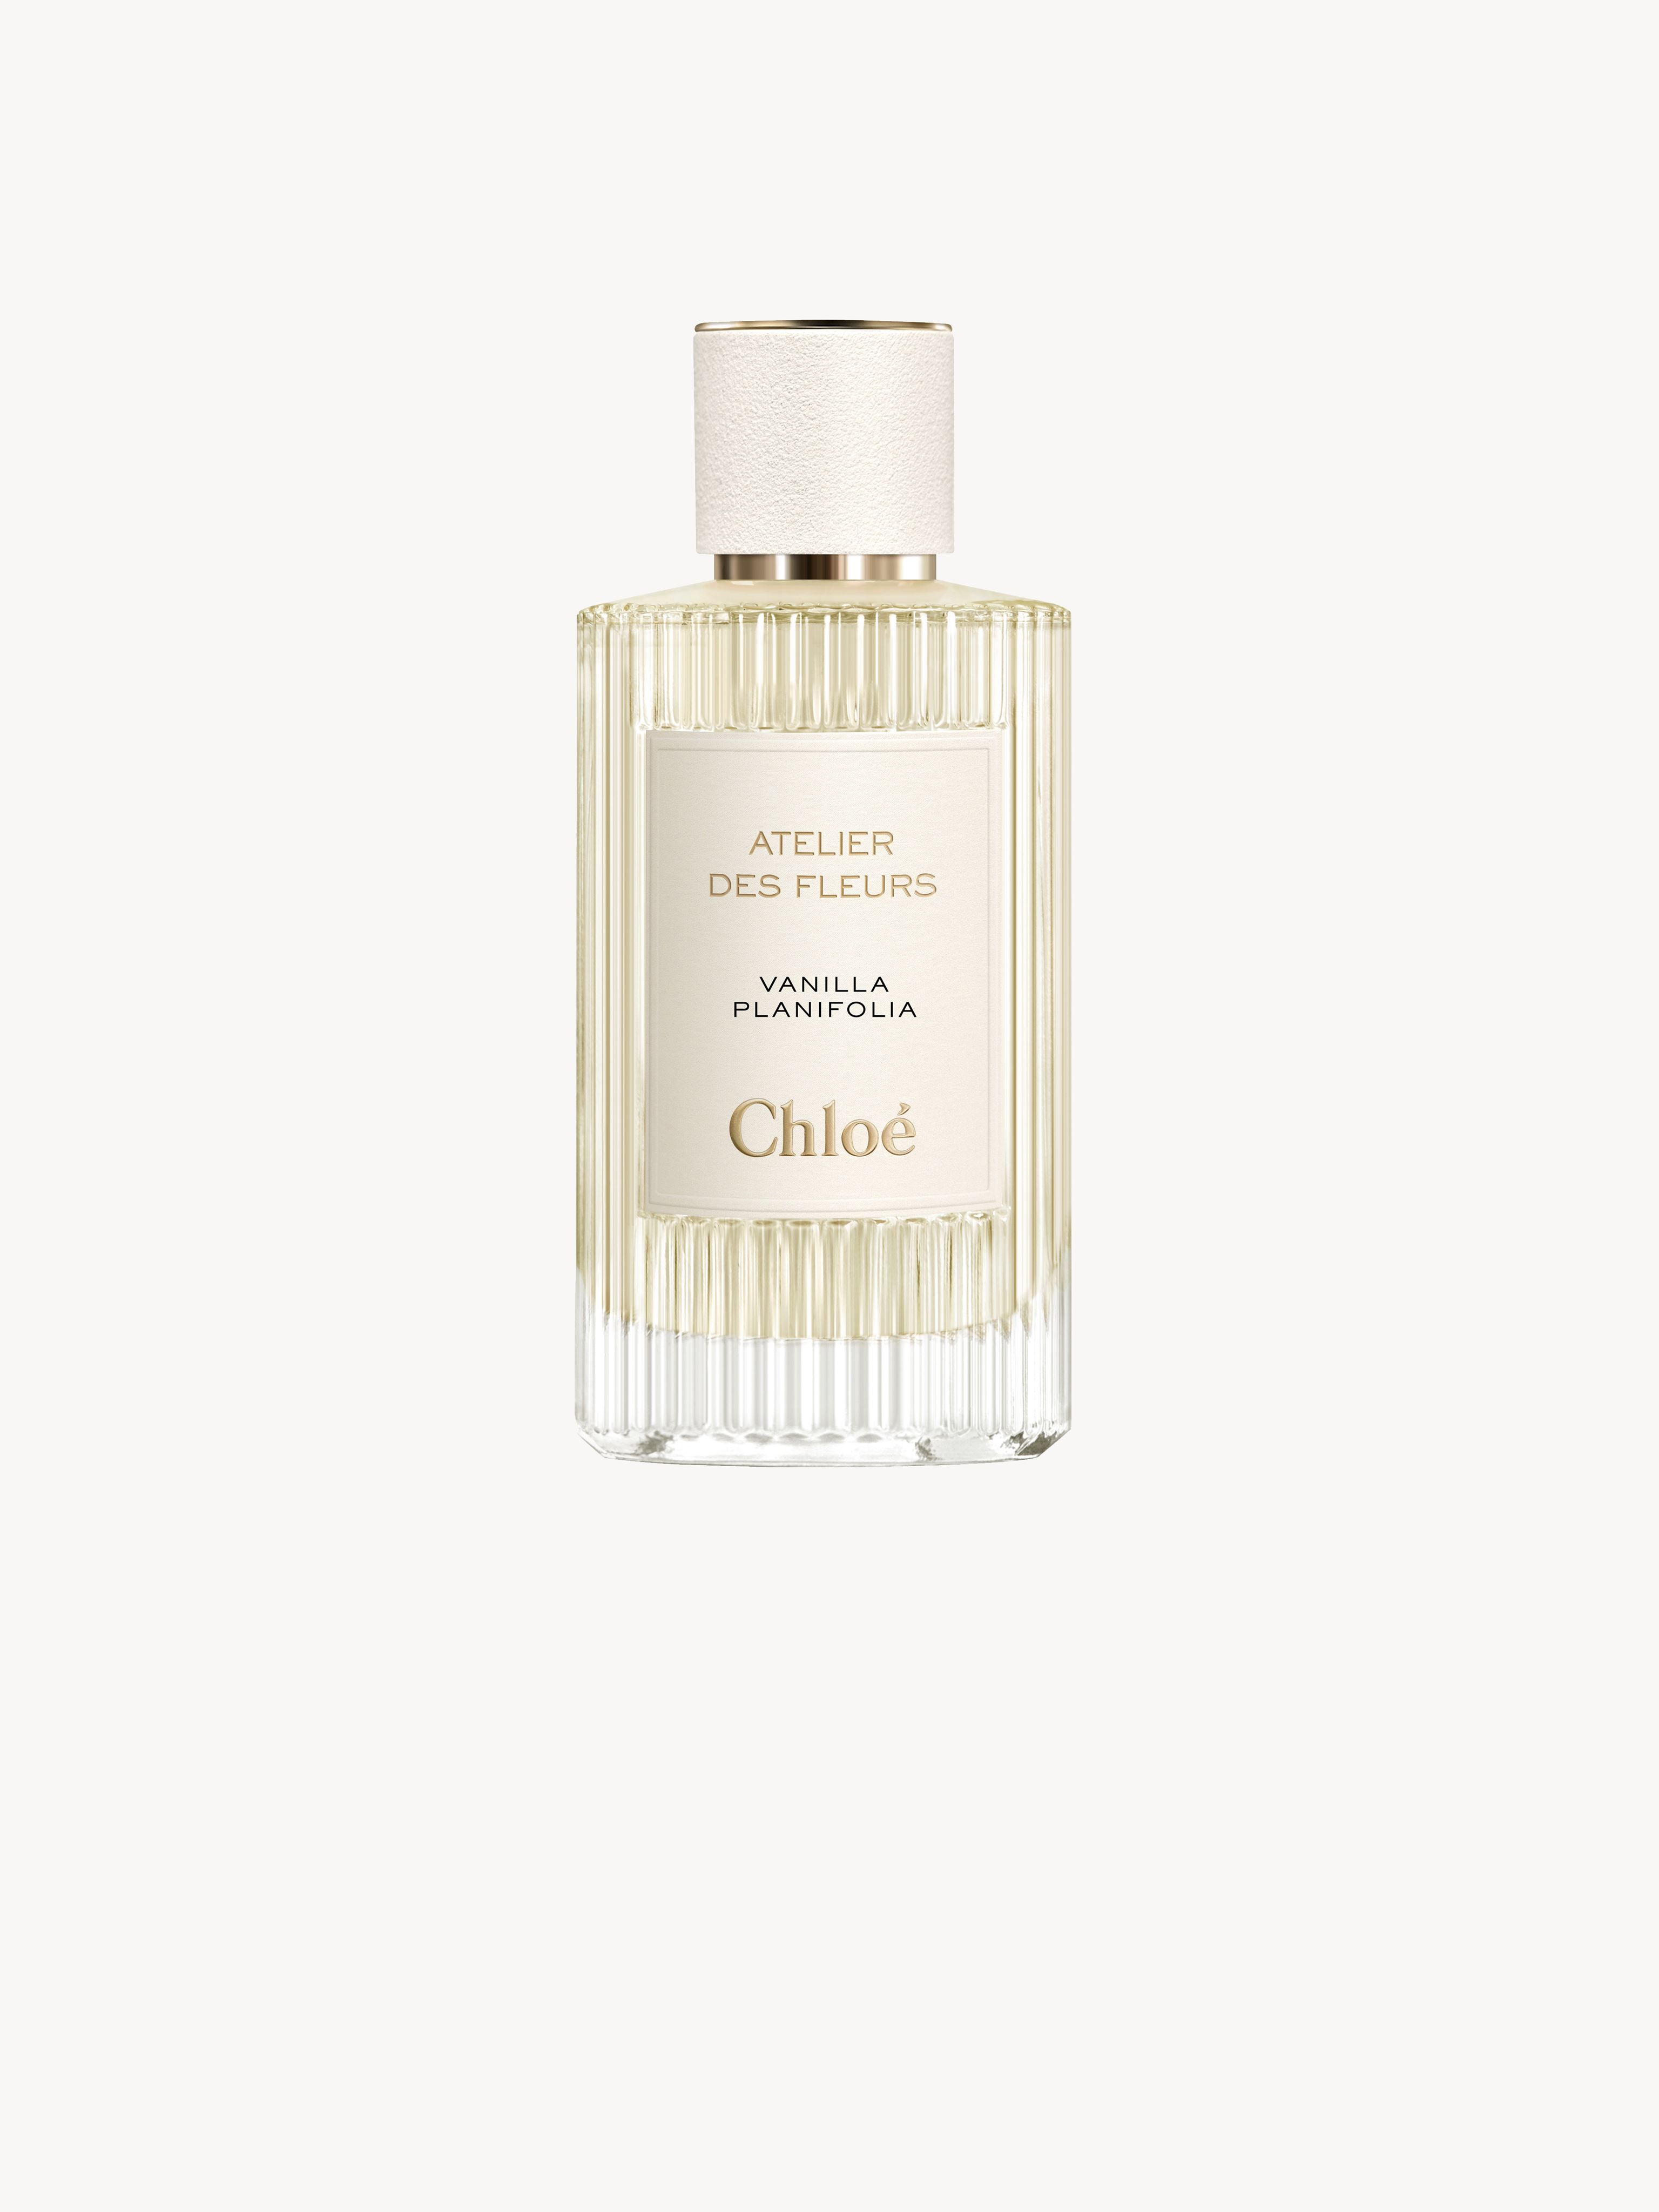 CHLOÉ Atelier des Fleurs Vanilla Planifolia Transparent Size 5.1 100% Fragrances | Chloe US